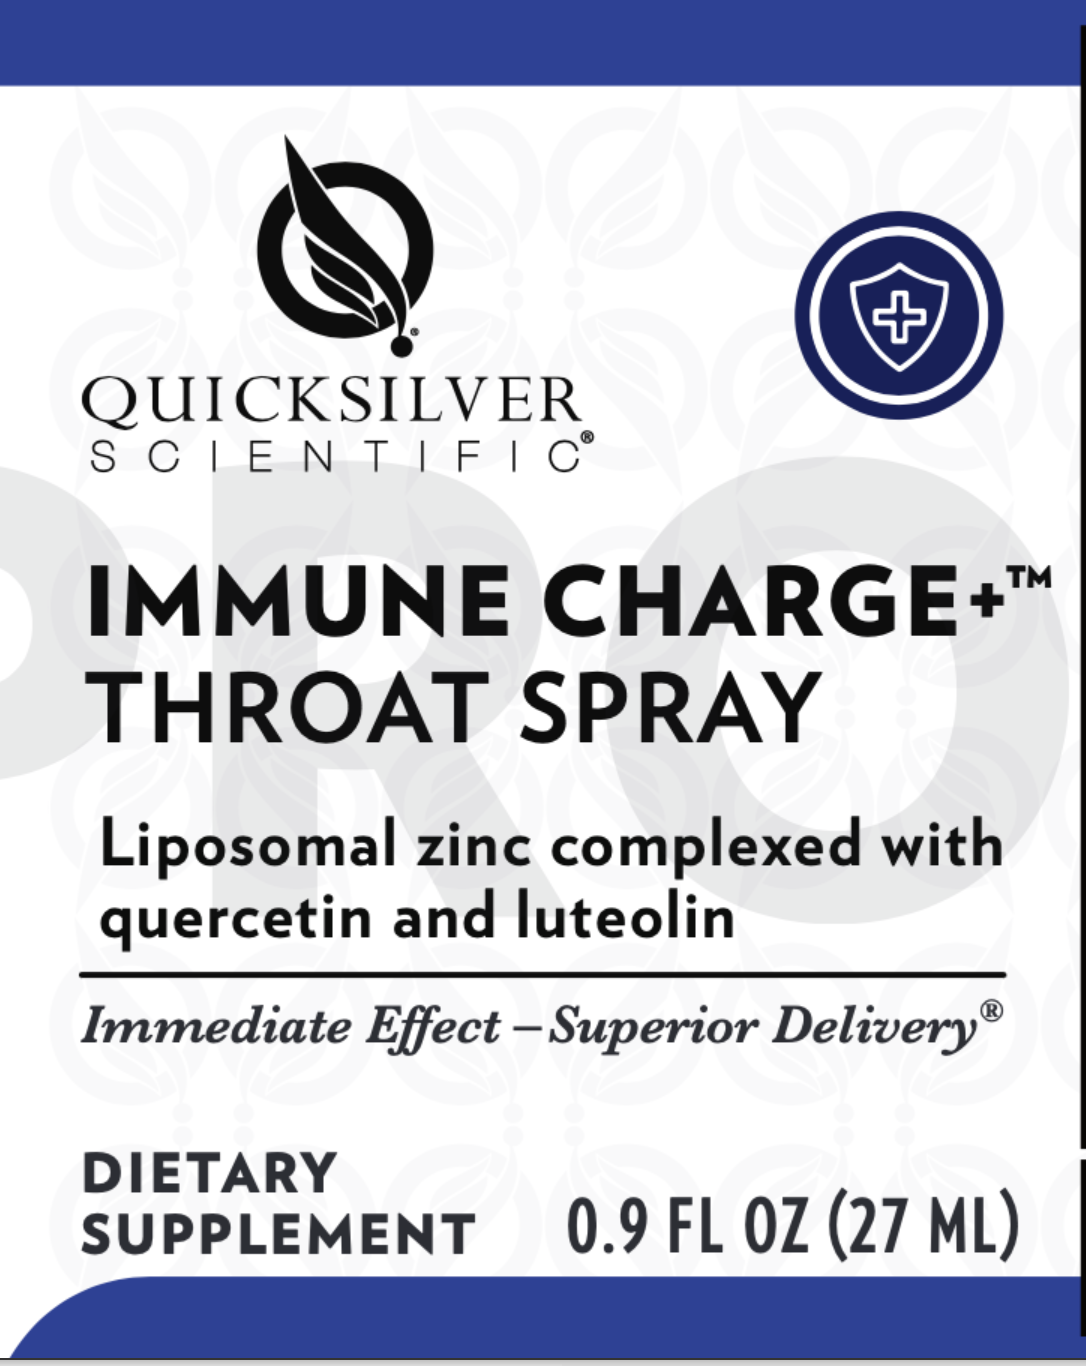 Quicksilver Scientific Immune Charge+ Throat Spray